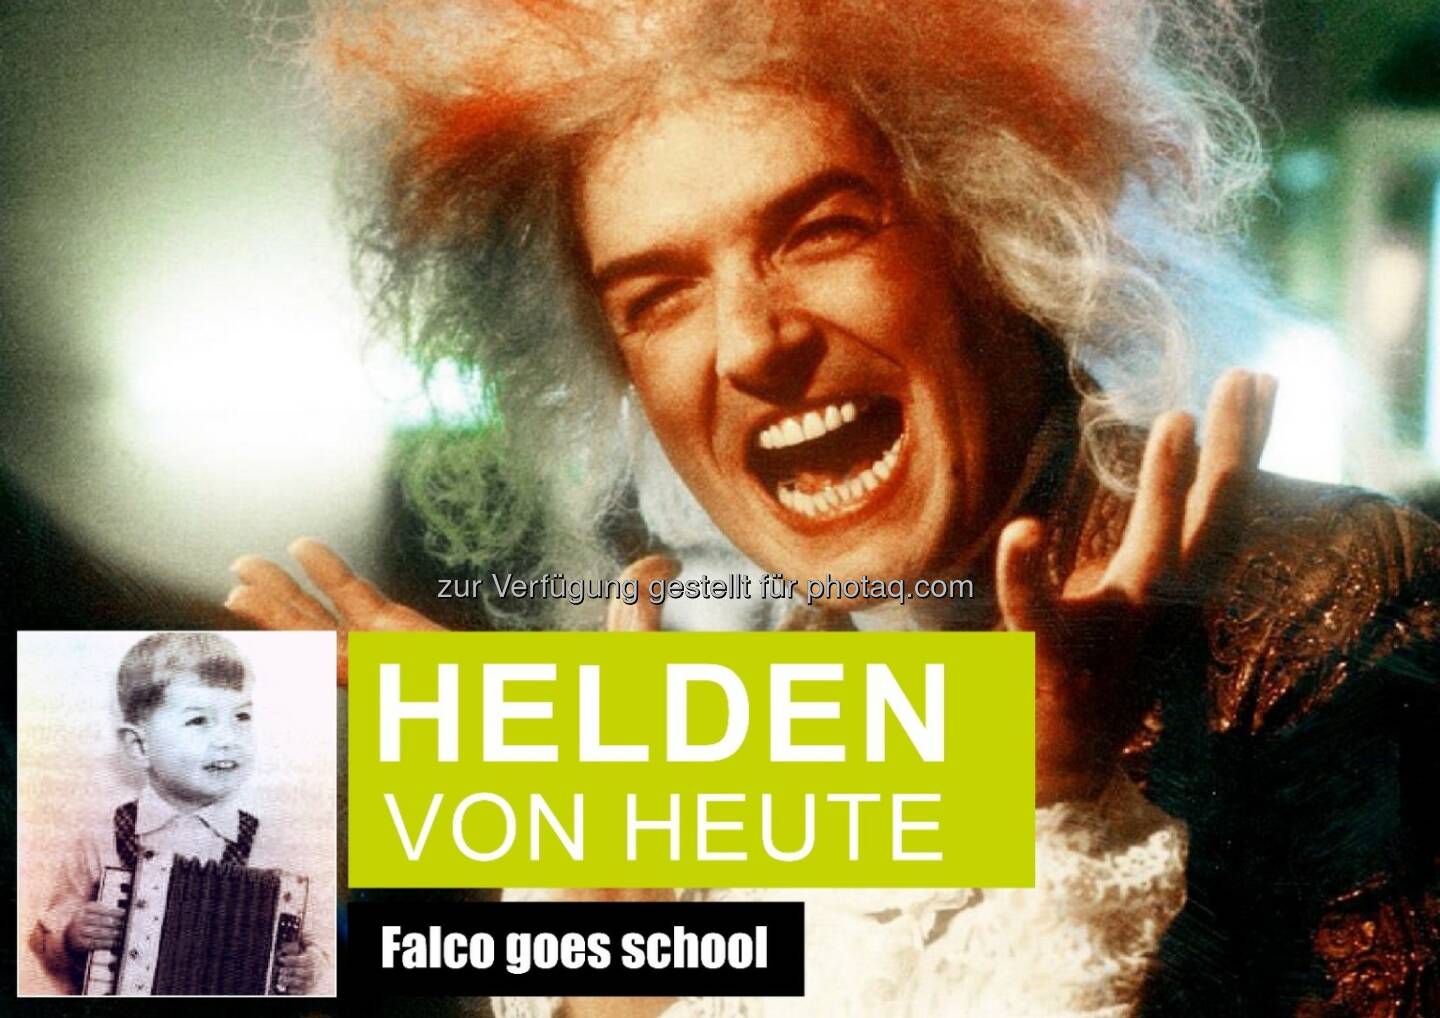 Helden von heute - Falco goes school : Falco Privatstiftung startet ab 1.März Talent-Wettbewerb für Schüler : Fotocredit: Rudi Dolezal (Falco-Amadeus); Falco Privatstiftung (Falco-Kind)